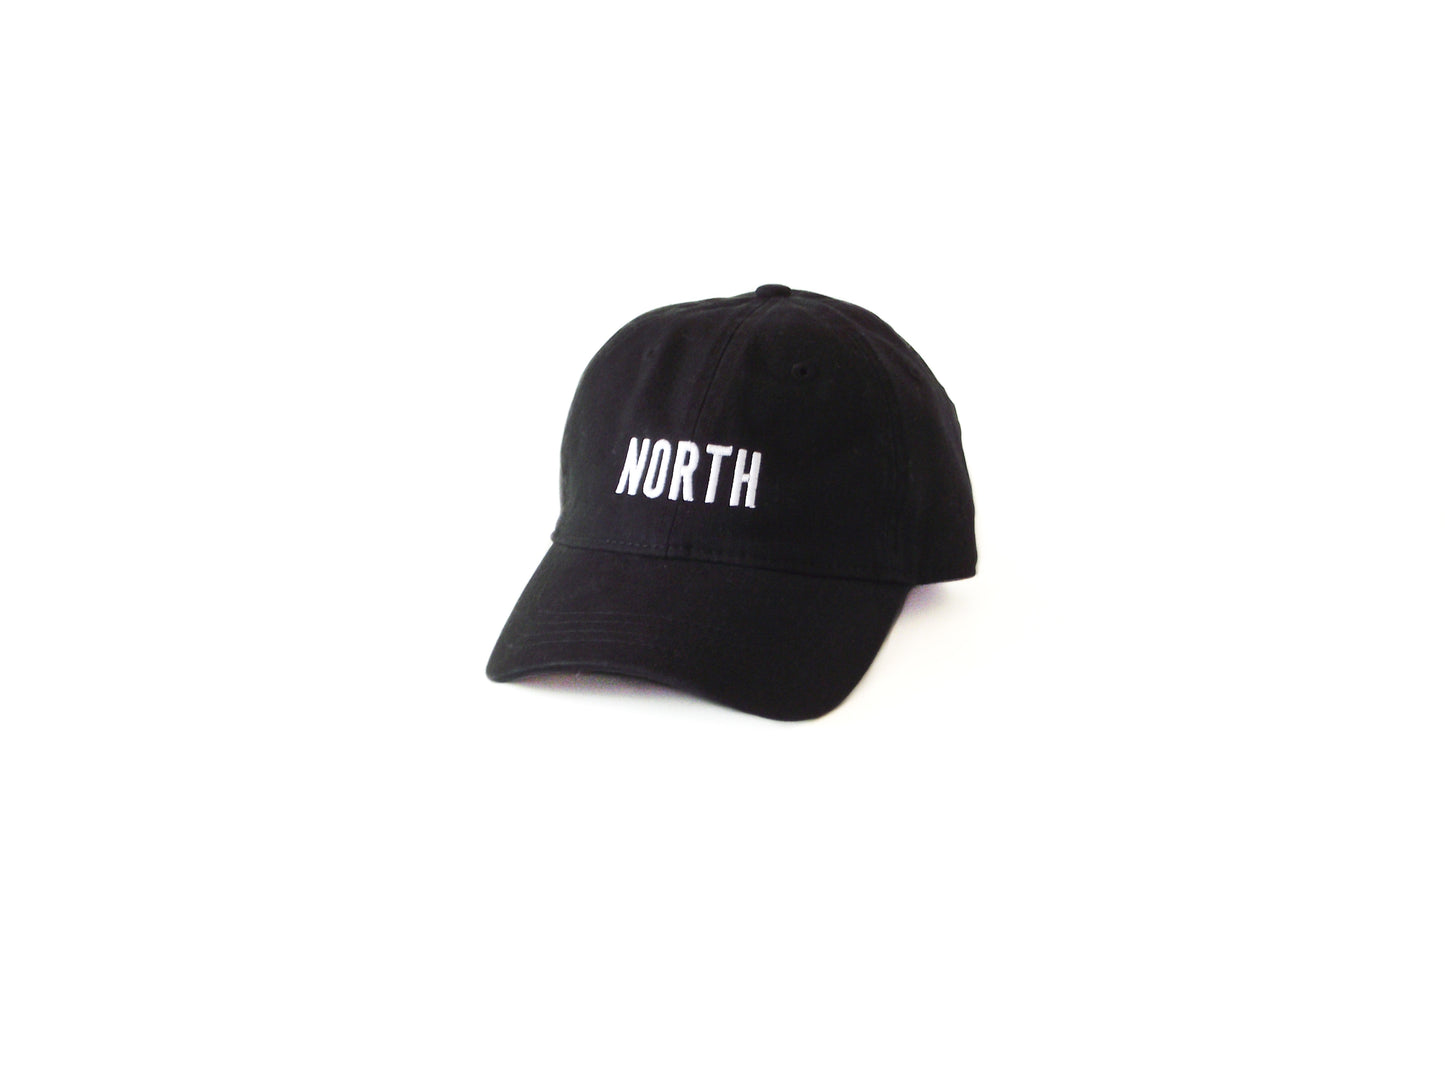 North Dad Hat